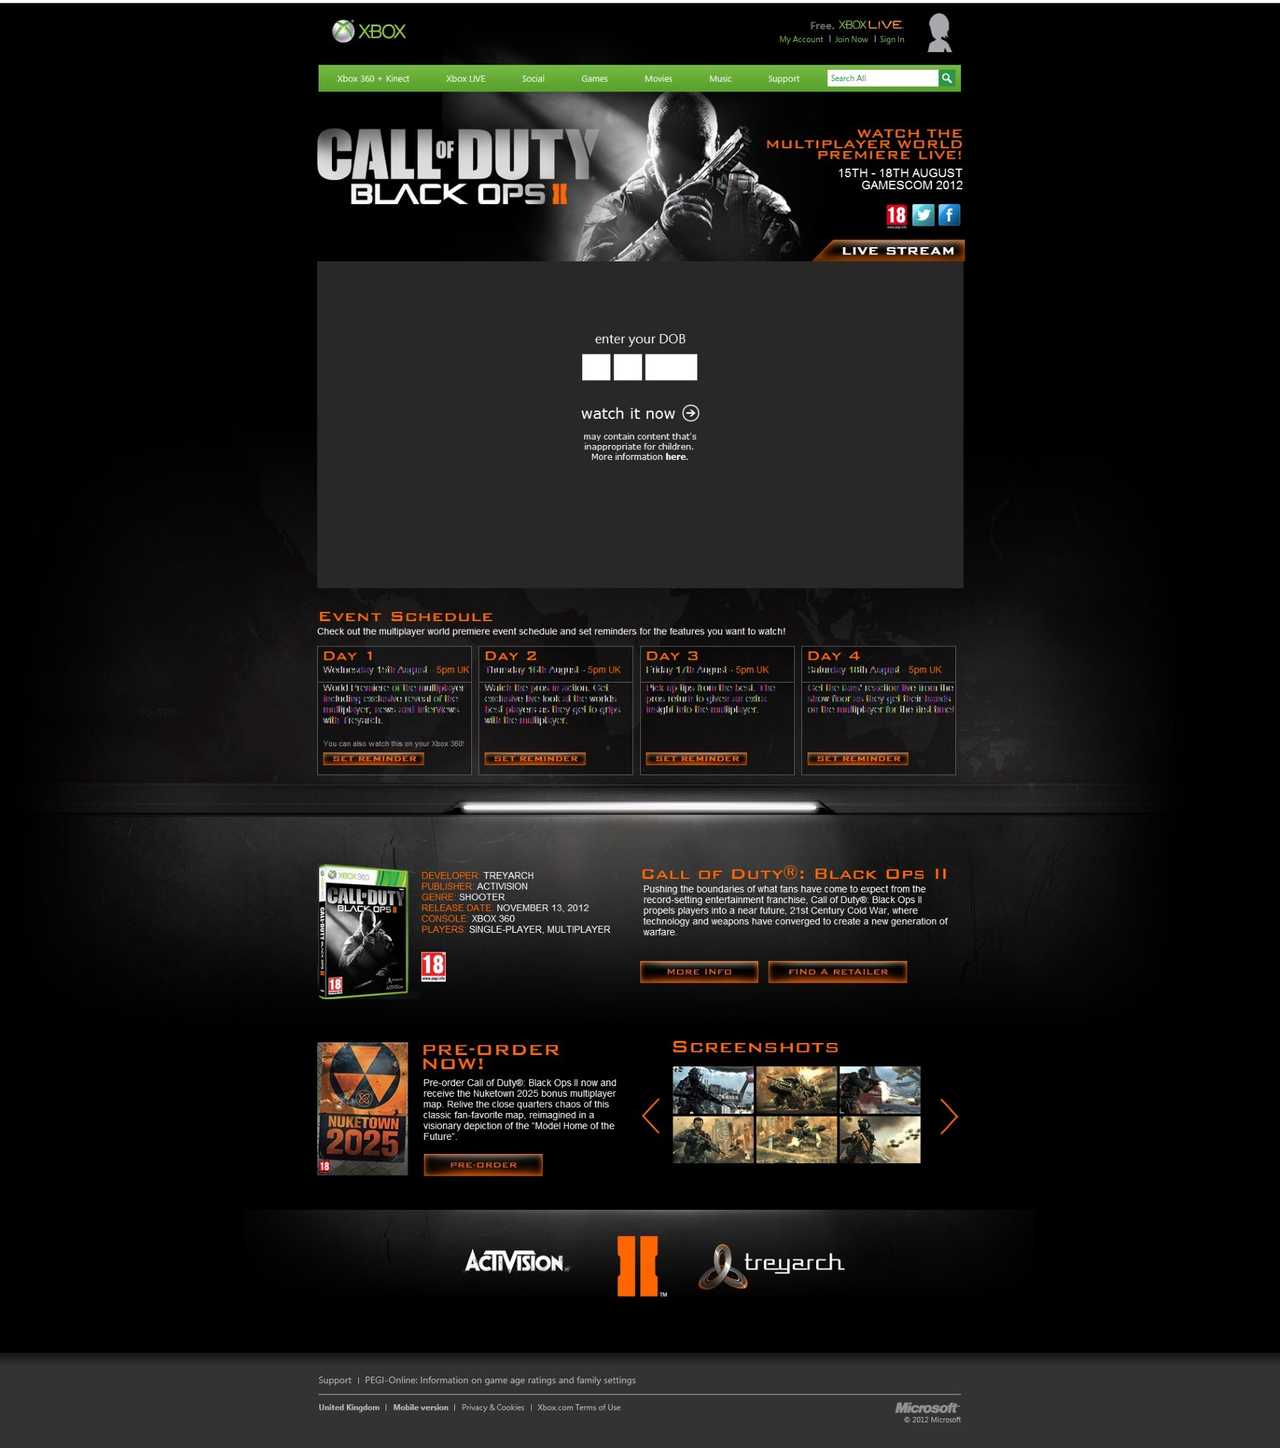 Call of Duty Black Ops II - Stream AgeGate